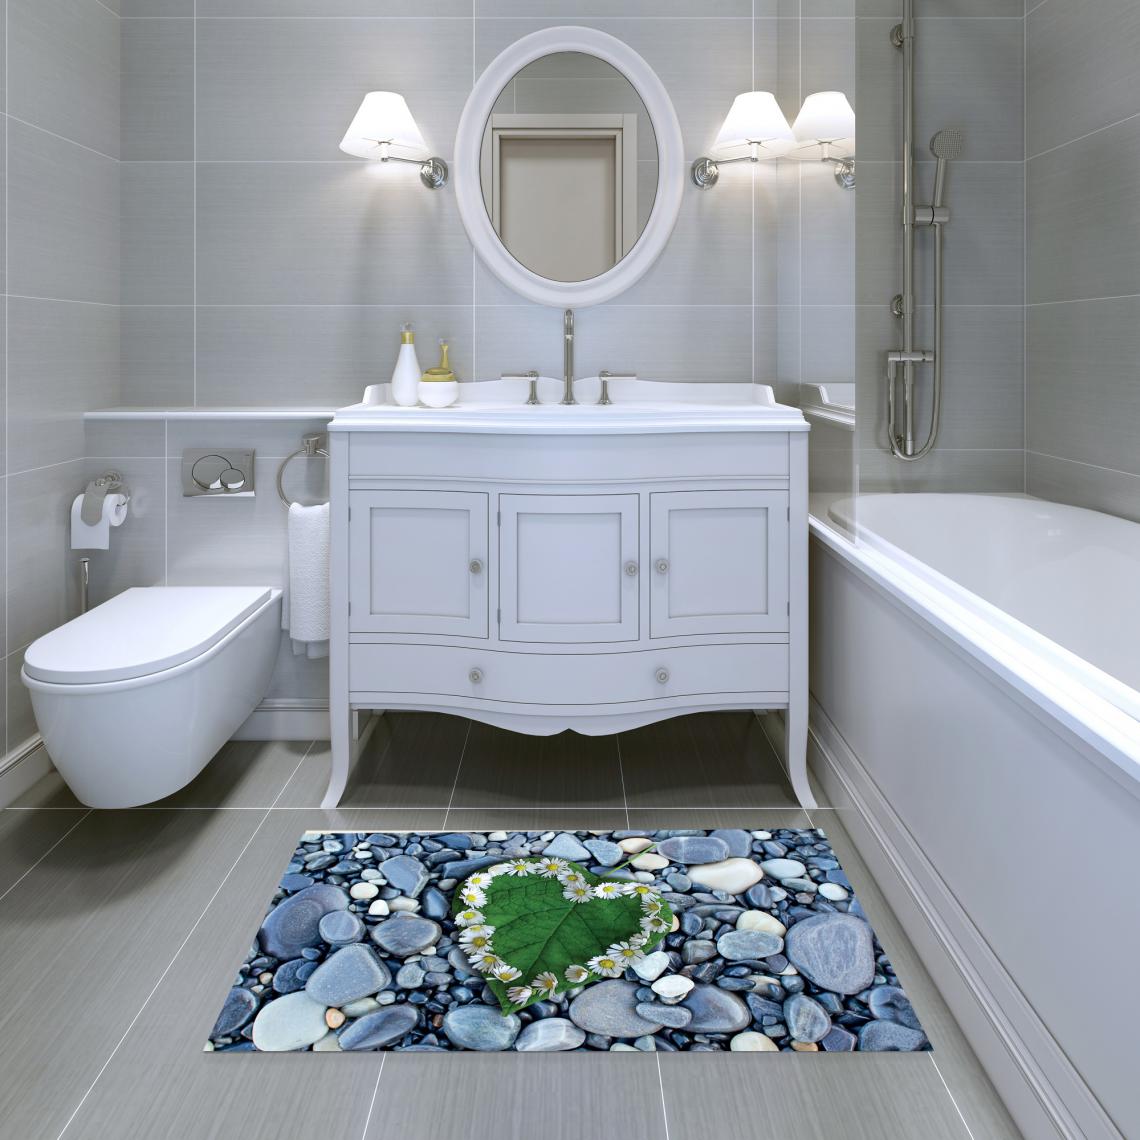 Alter - Tapis de salle de bain, 100% Made in Italy, Tapis antitache avec impression numérique, Tapis antidérapant et lavable, Modèle Alana, 120x70 cm - Tapis